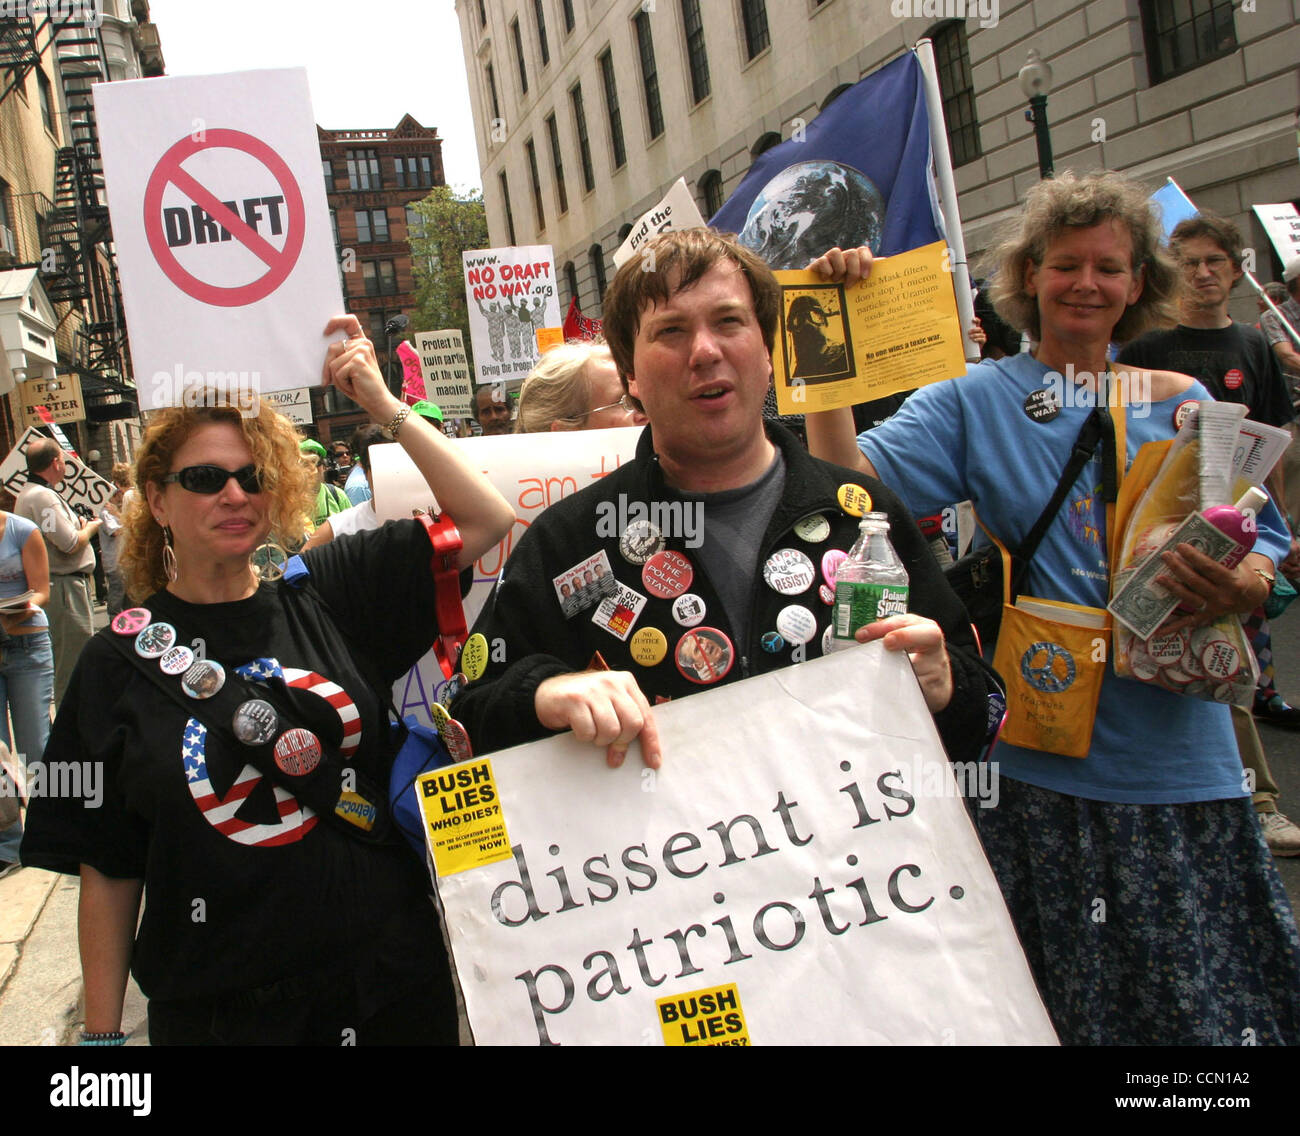 Jul 25, 2004; Boston, MA, USA; manifestanti sono fuori in pieno vigore per le proteste tenutasi alla vigilia della convention democratica. Foto Stock